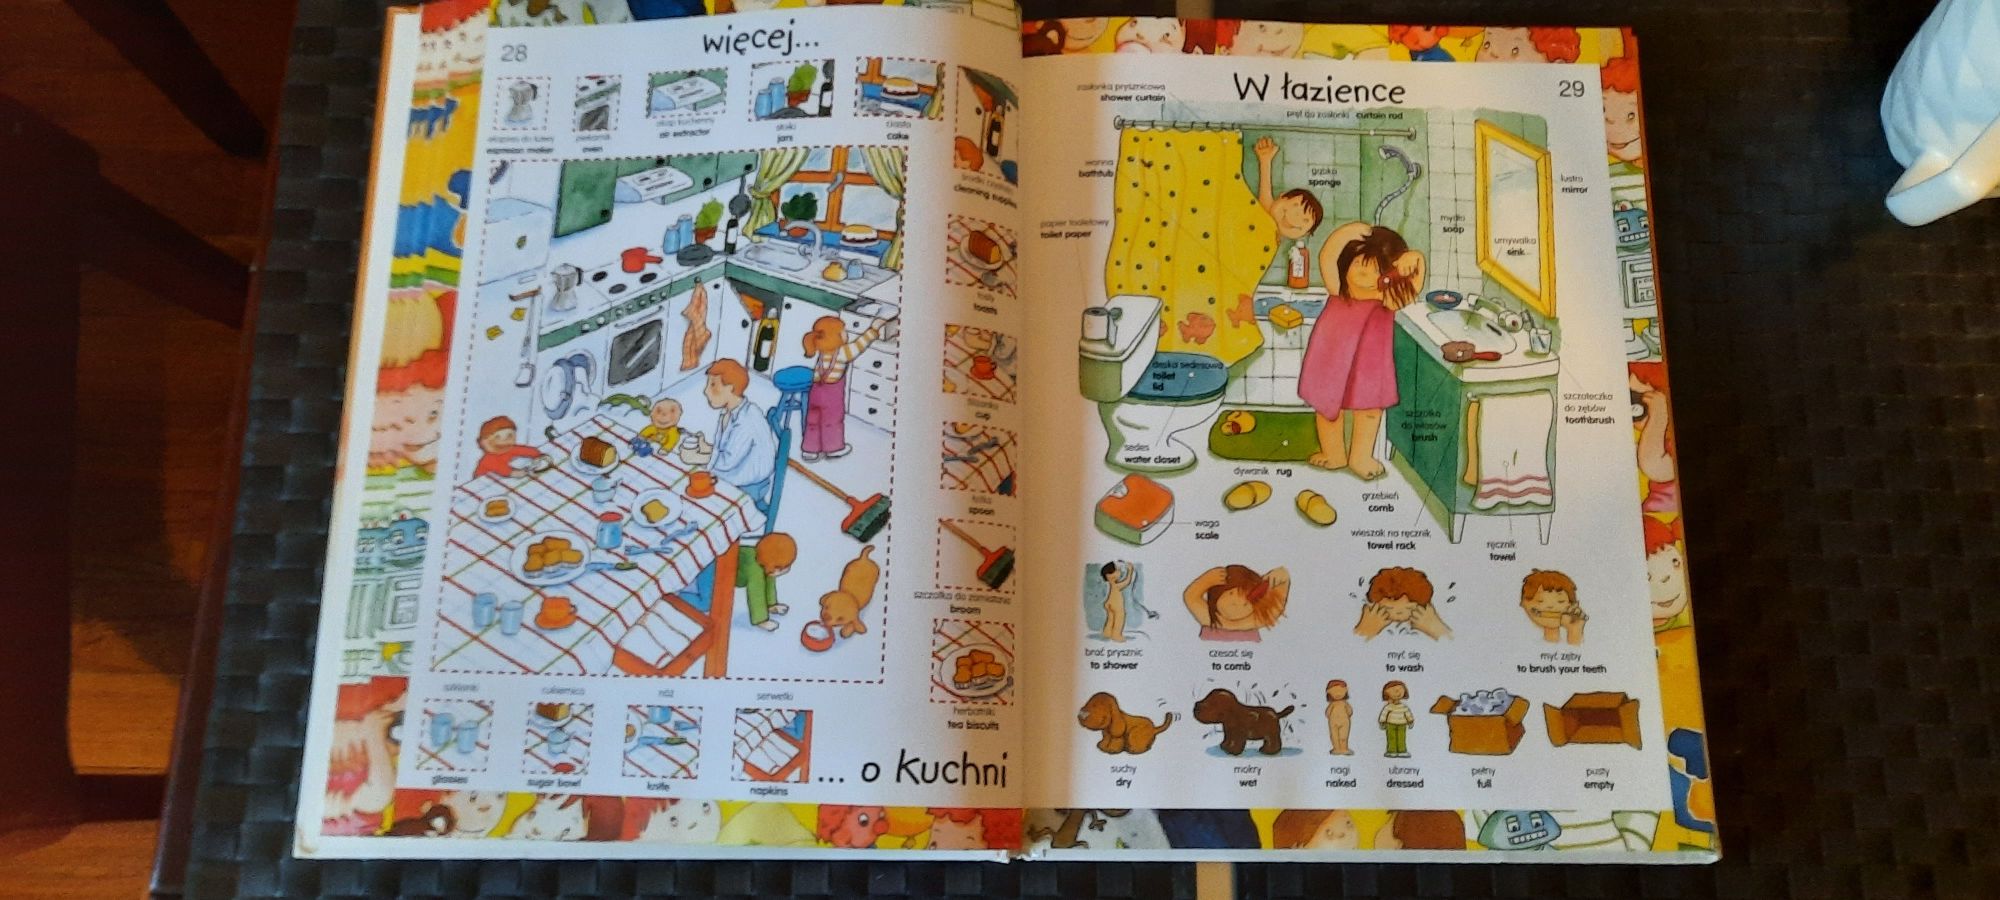 Wielki ilustrowany słownik polsko-angielski dla dzieci